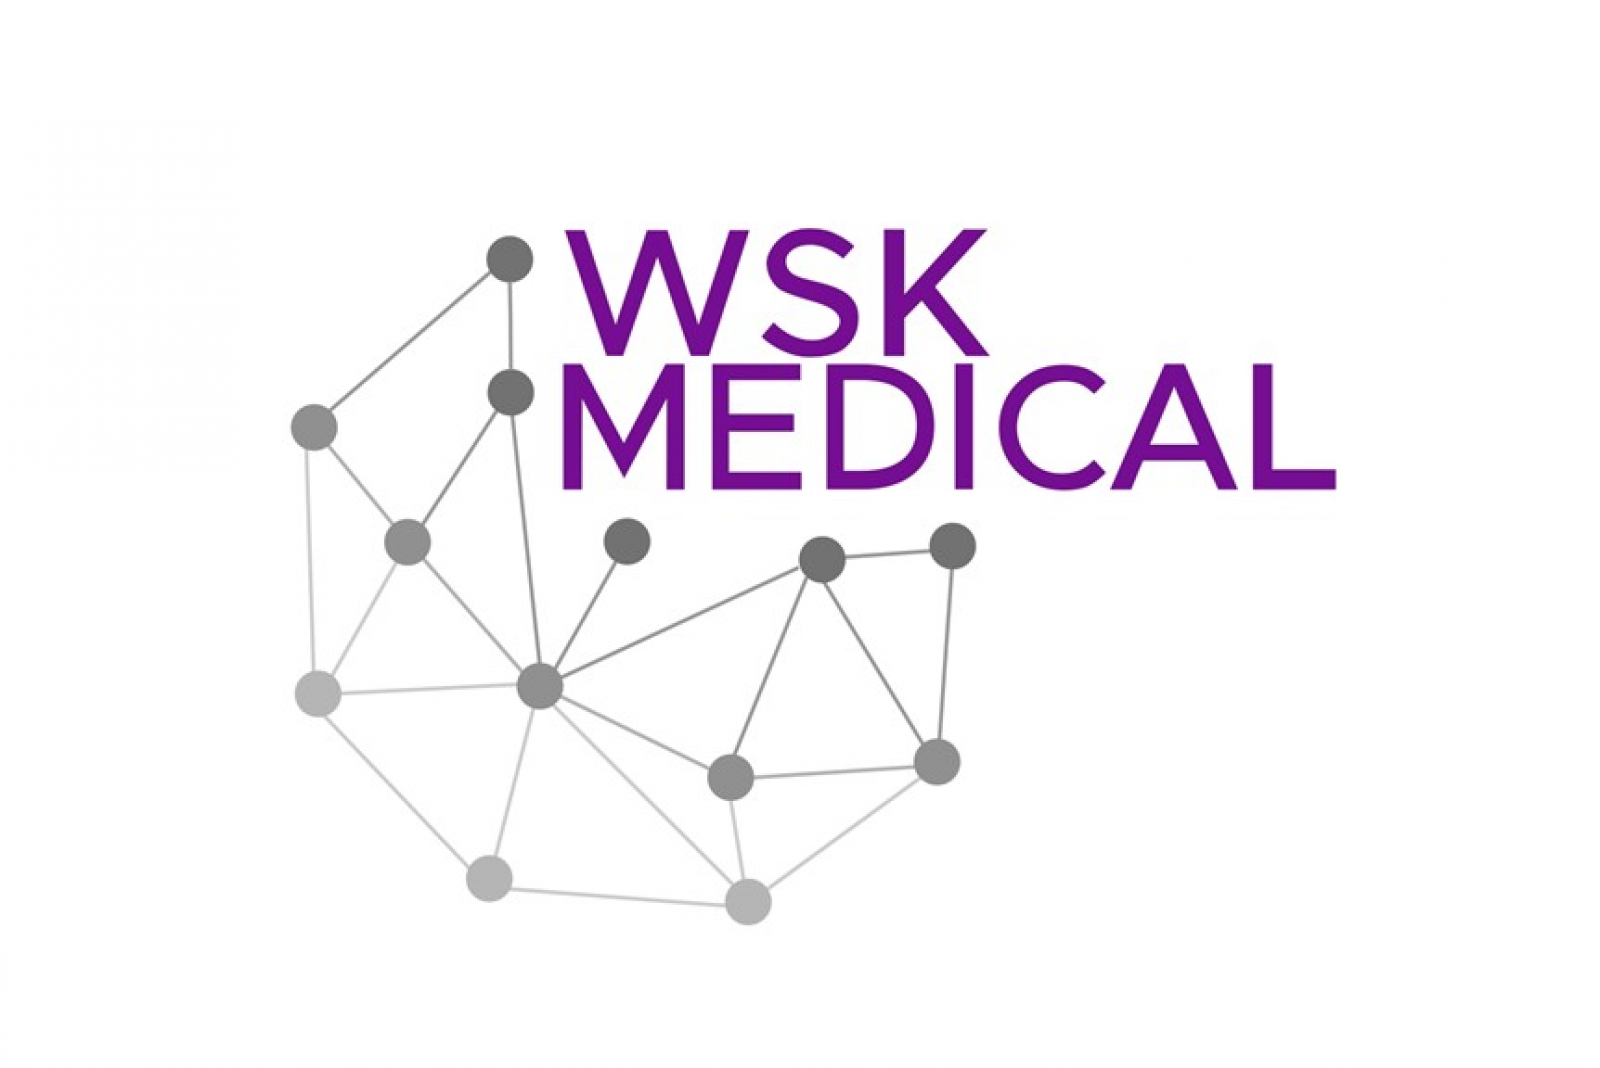 WSK Medical sponsor